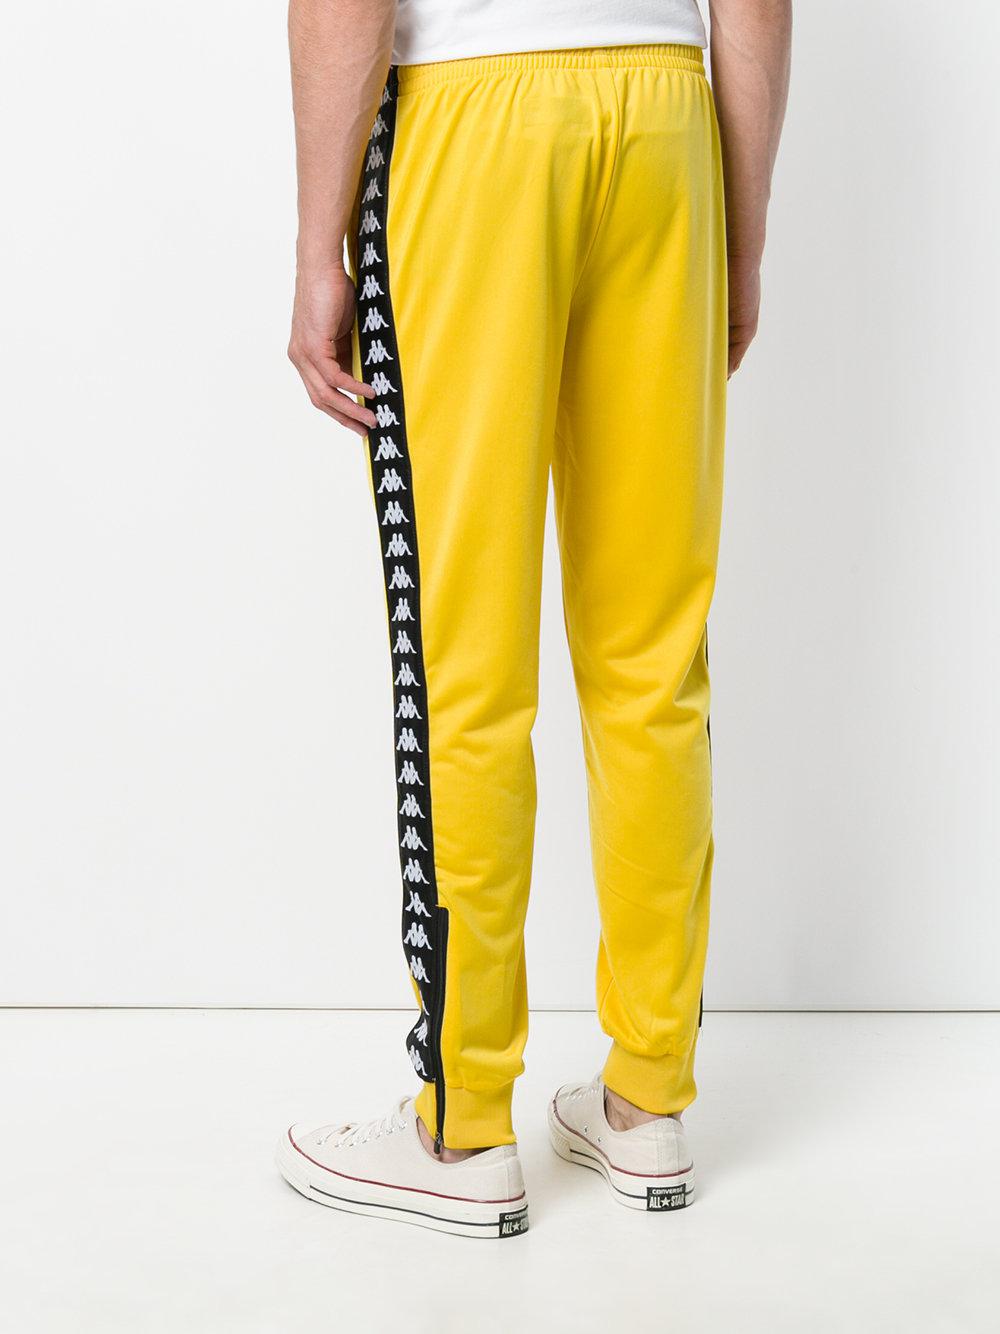 Kappa Track Pants Yellow Factory Sale, 55% OFF | ilikepinga.com